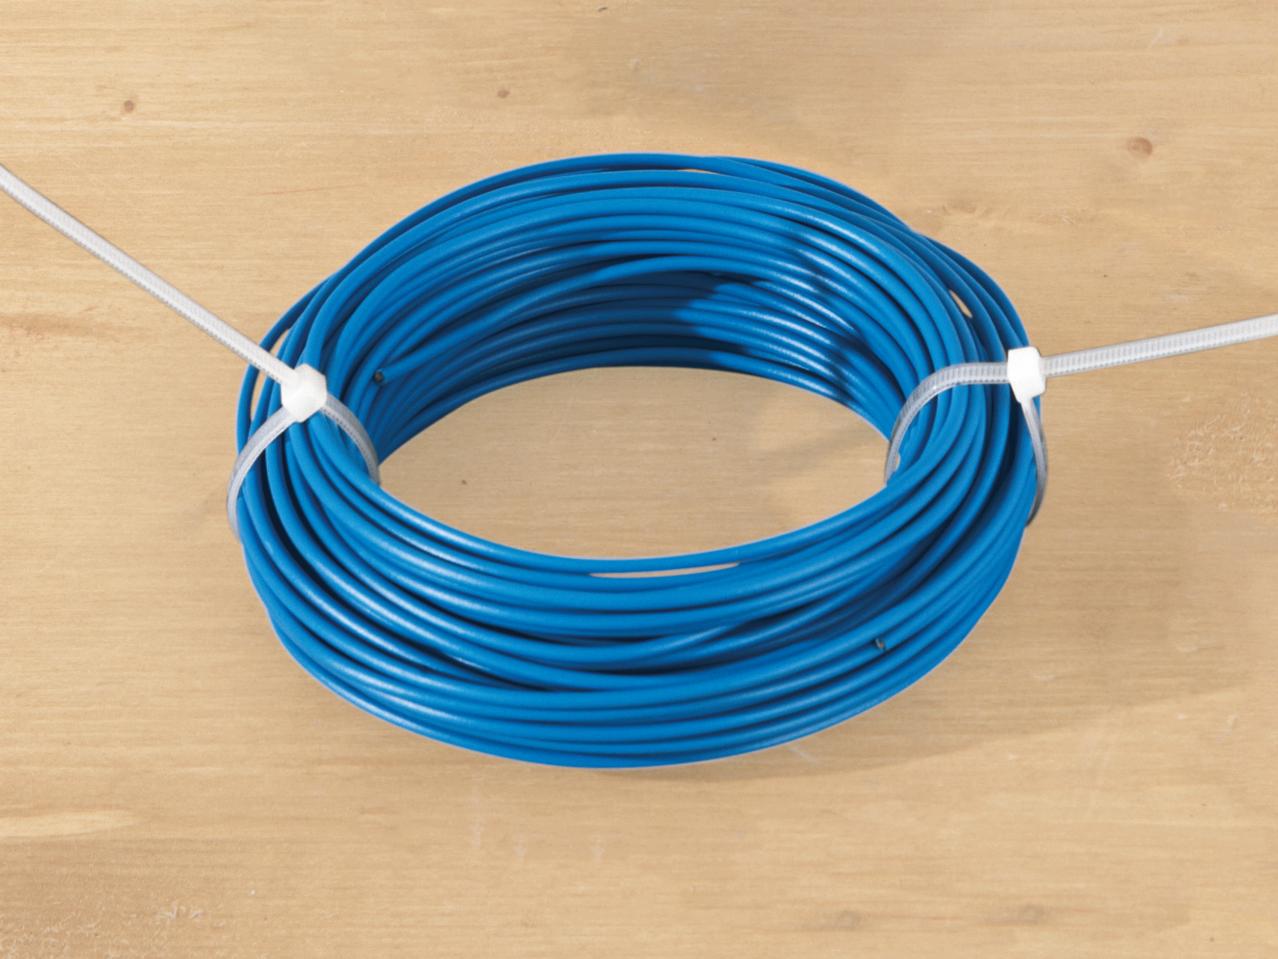 POWERFIX Cable Tie Set